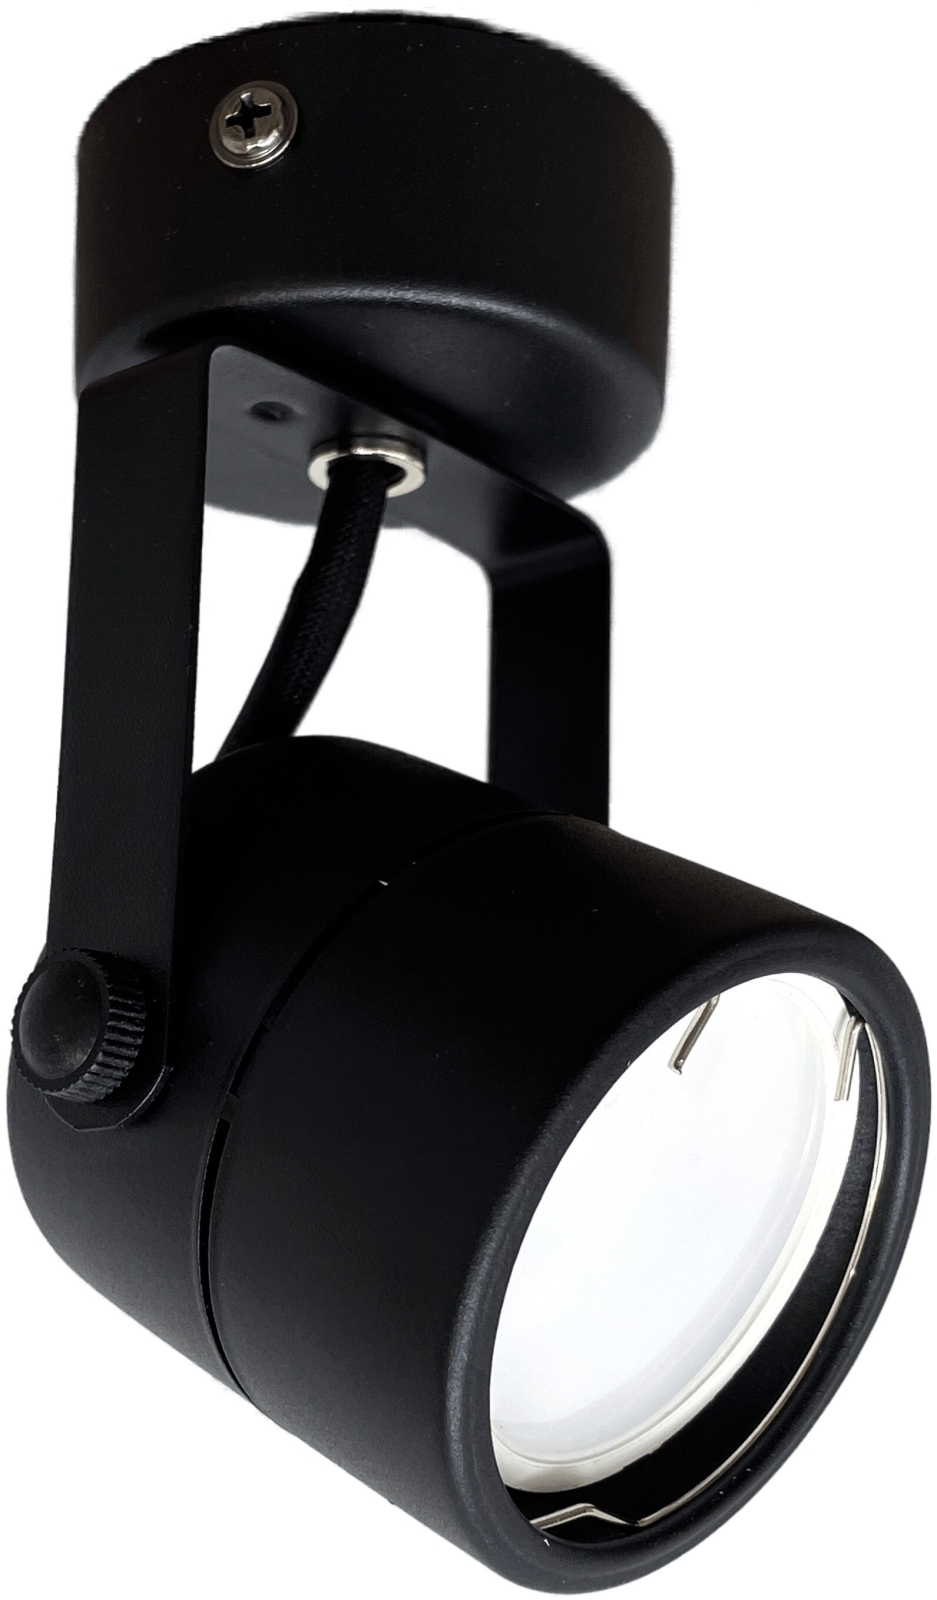 Светильник накладной поворотный под лампу GU10 TRUENERGY Focus круг черный (21345)